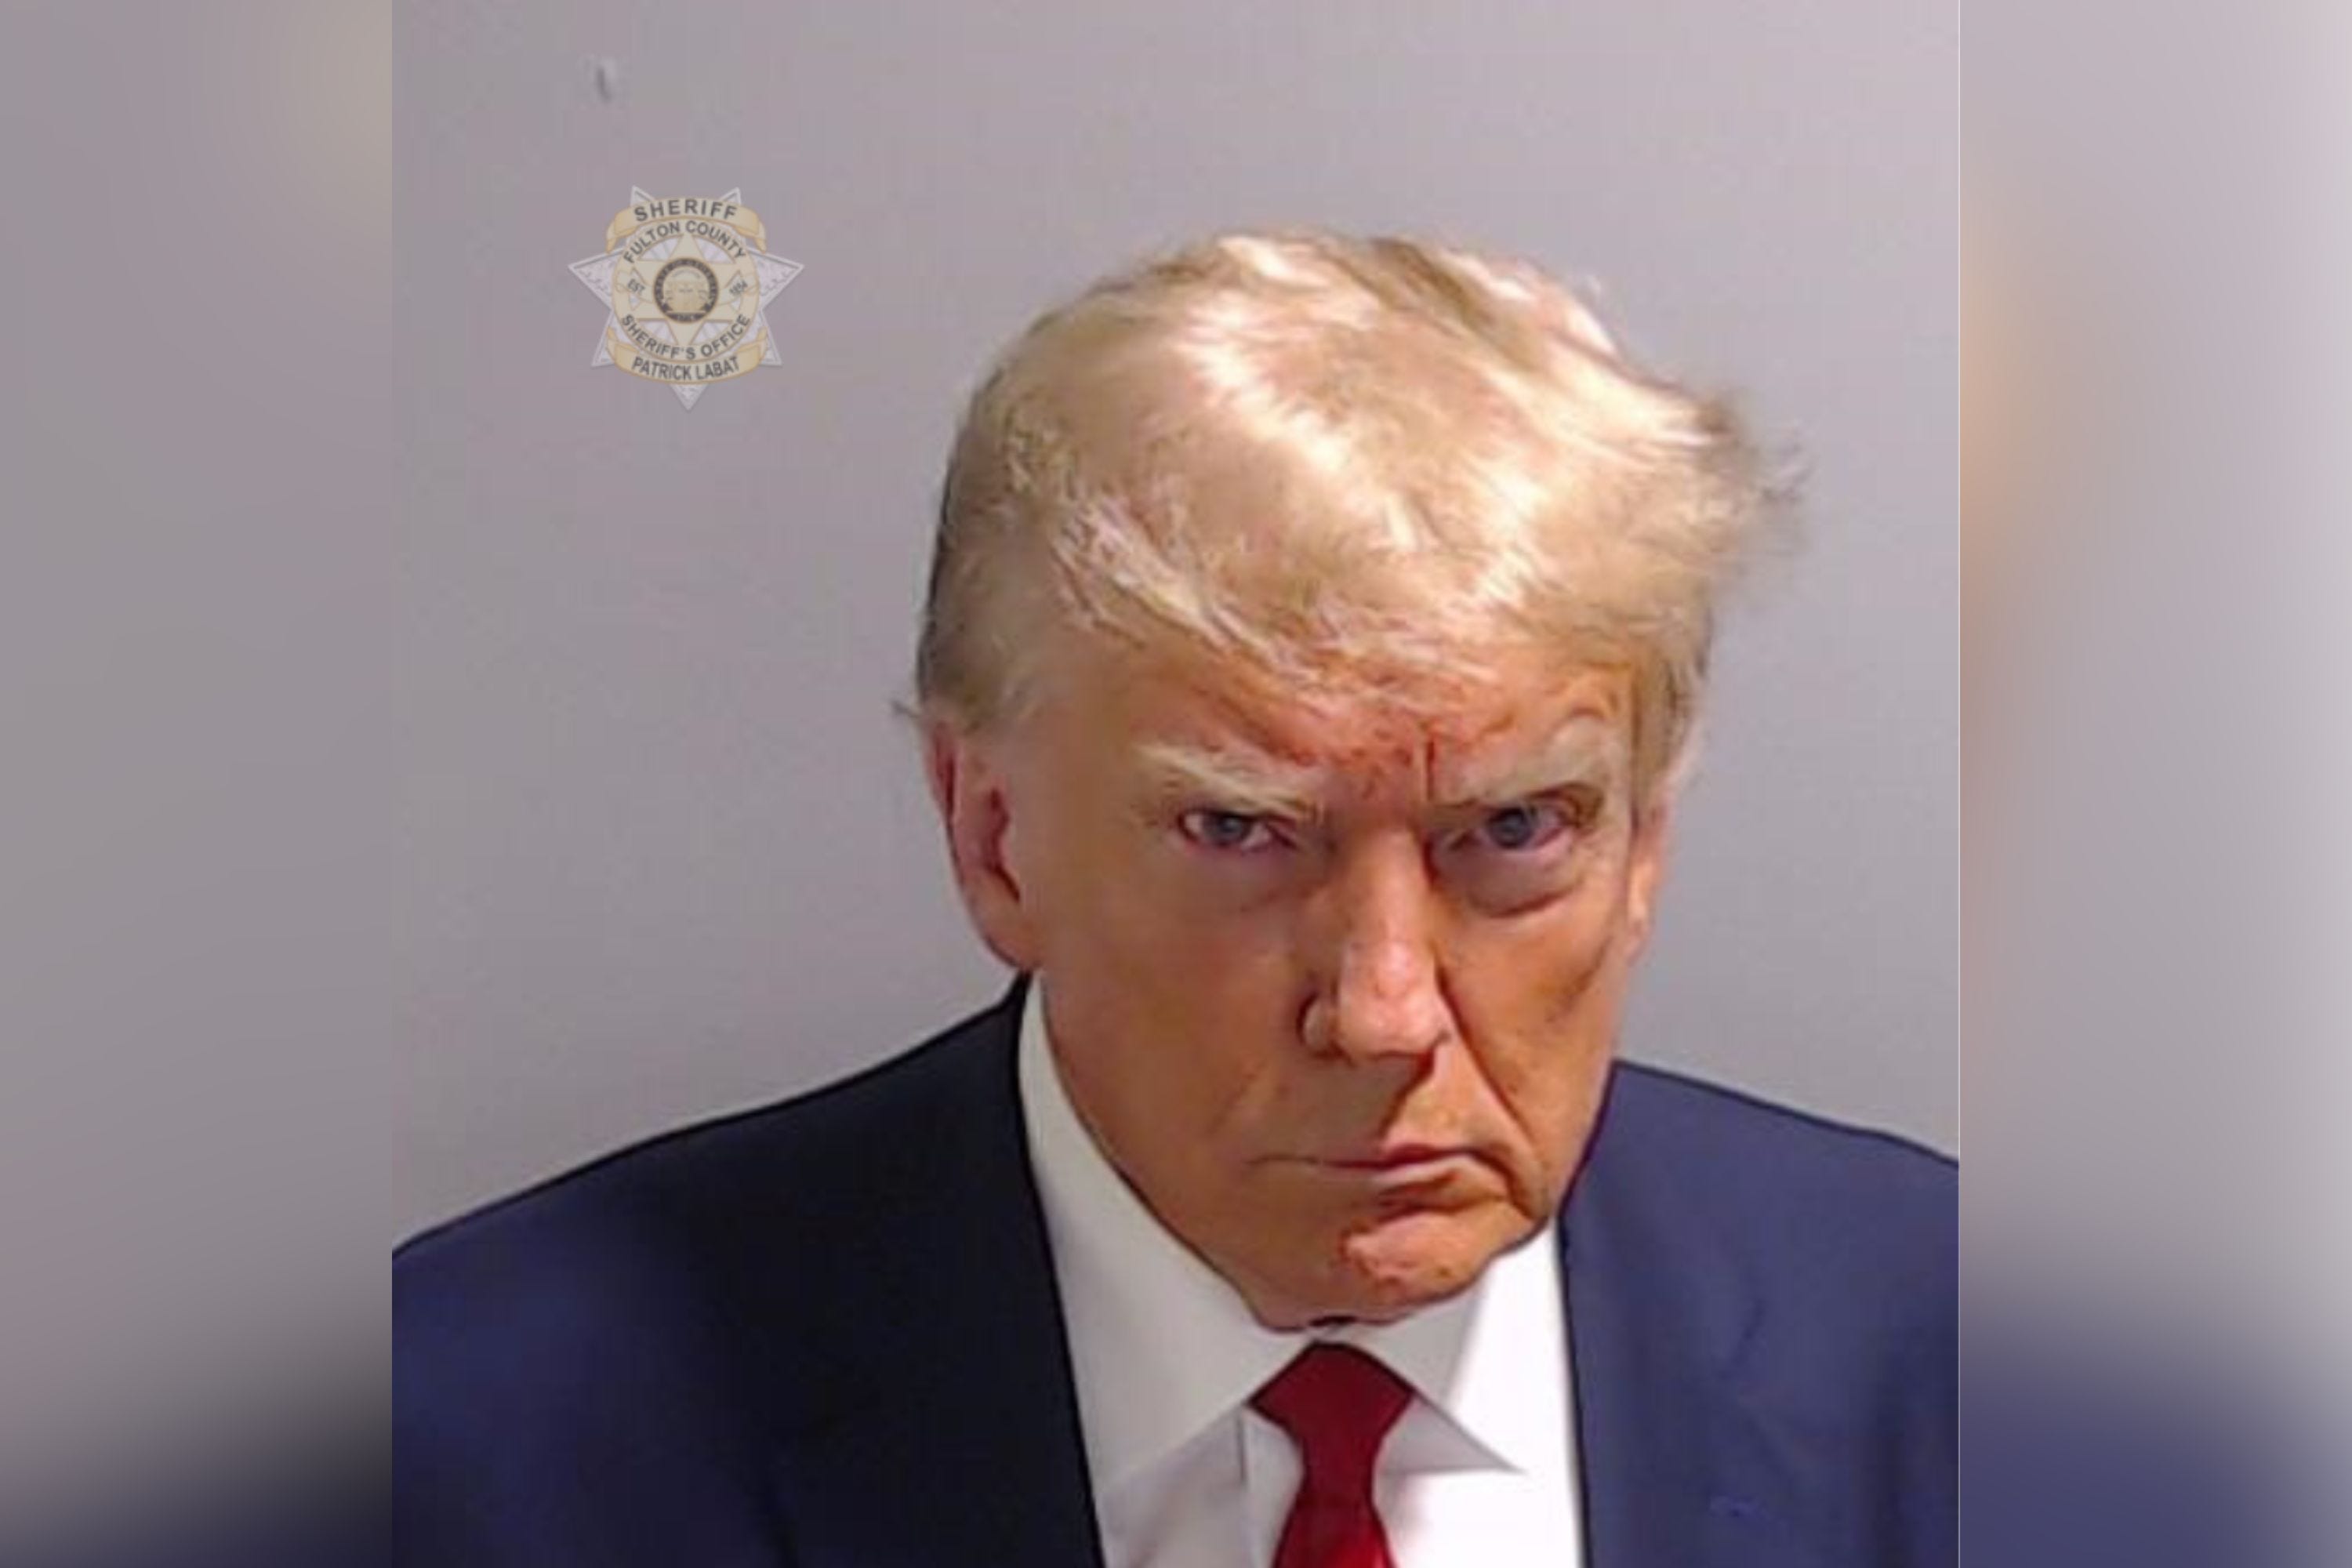 Fahndungsfoto von Donald Trump